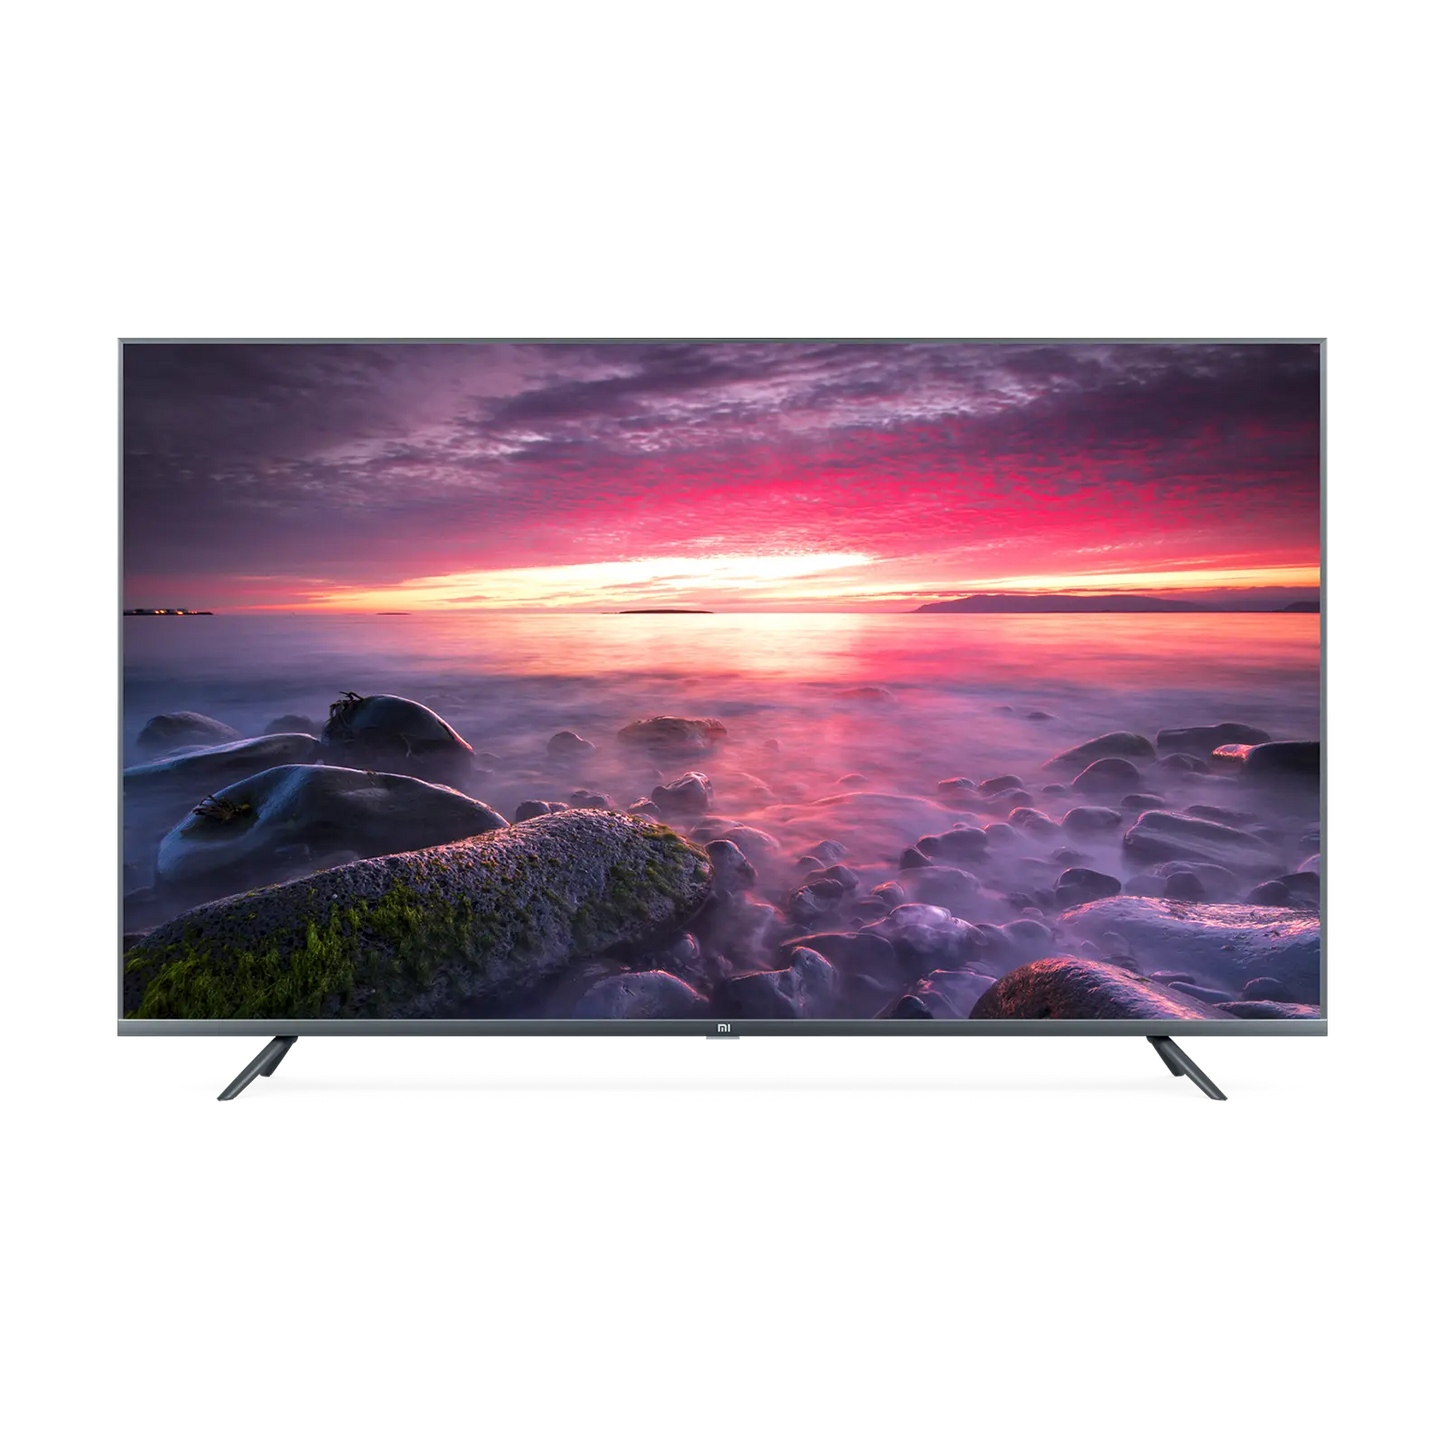 Mi LED TV 4S 55" od Xiaomi w SimplyBuy.pl